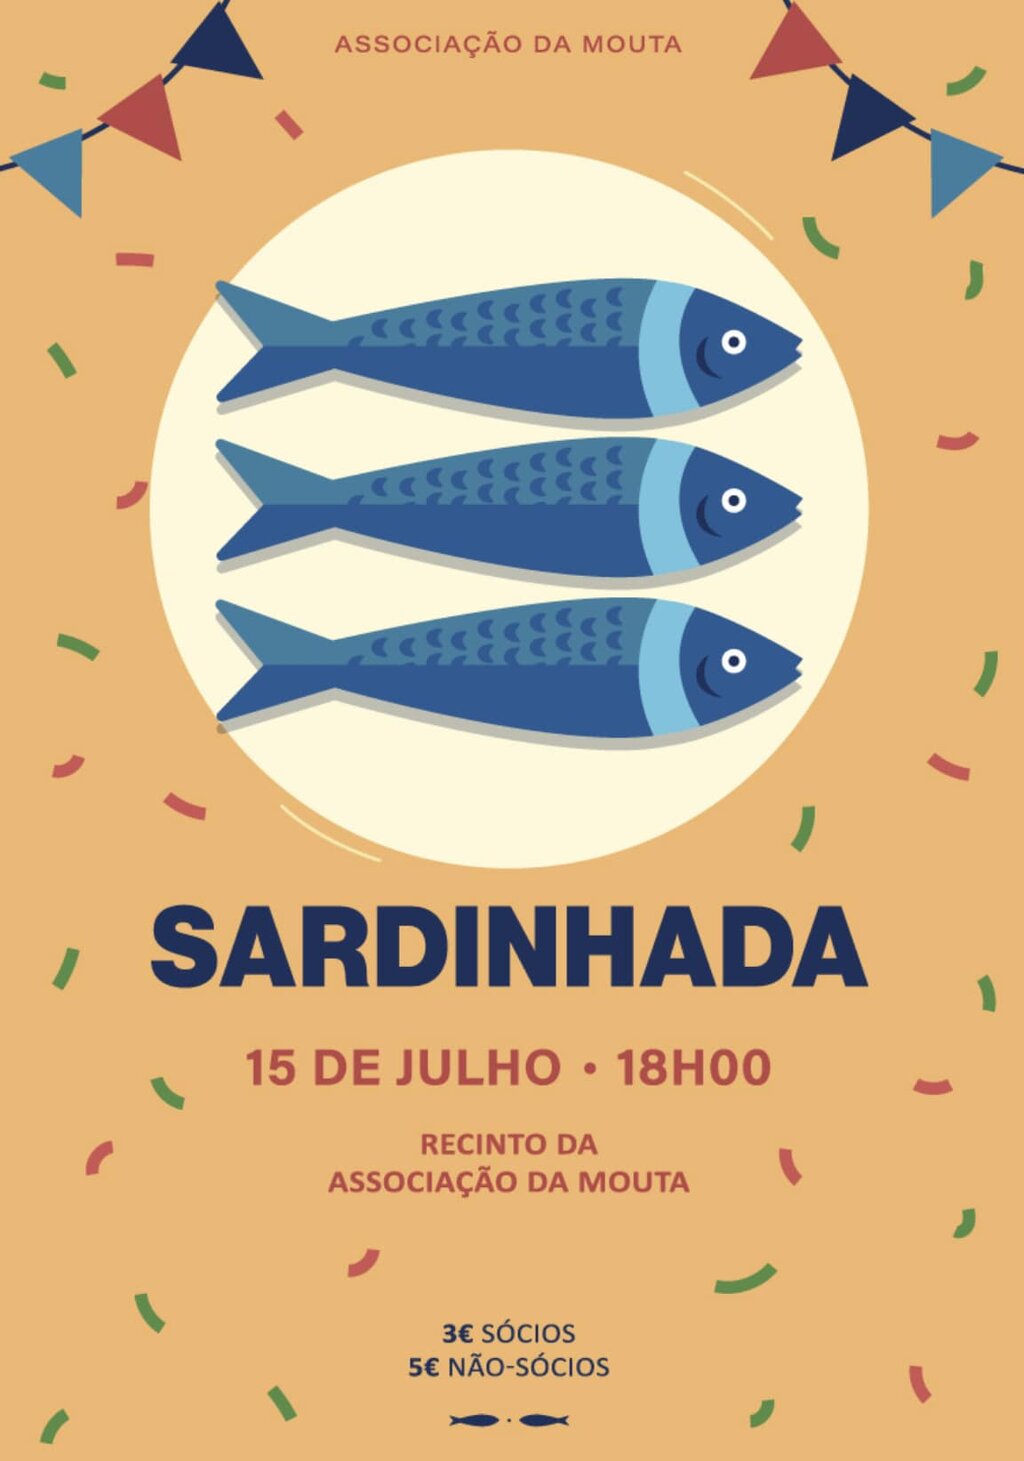 15 julho - Sardinhada - Mouta